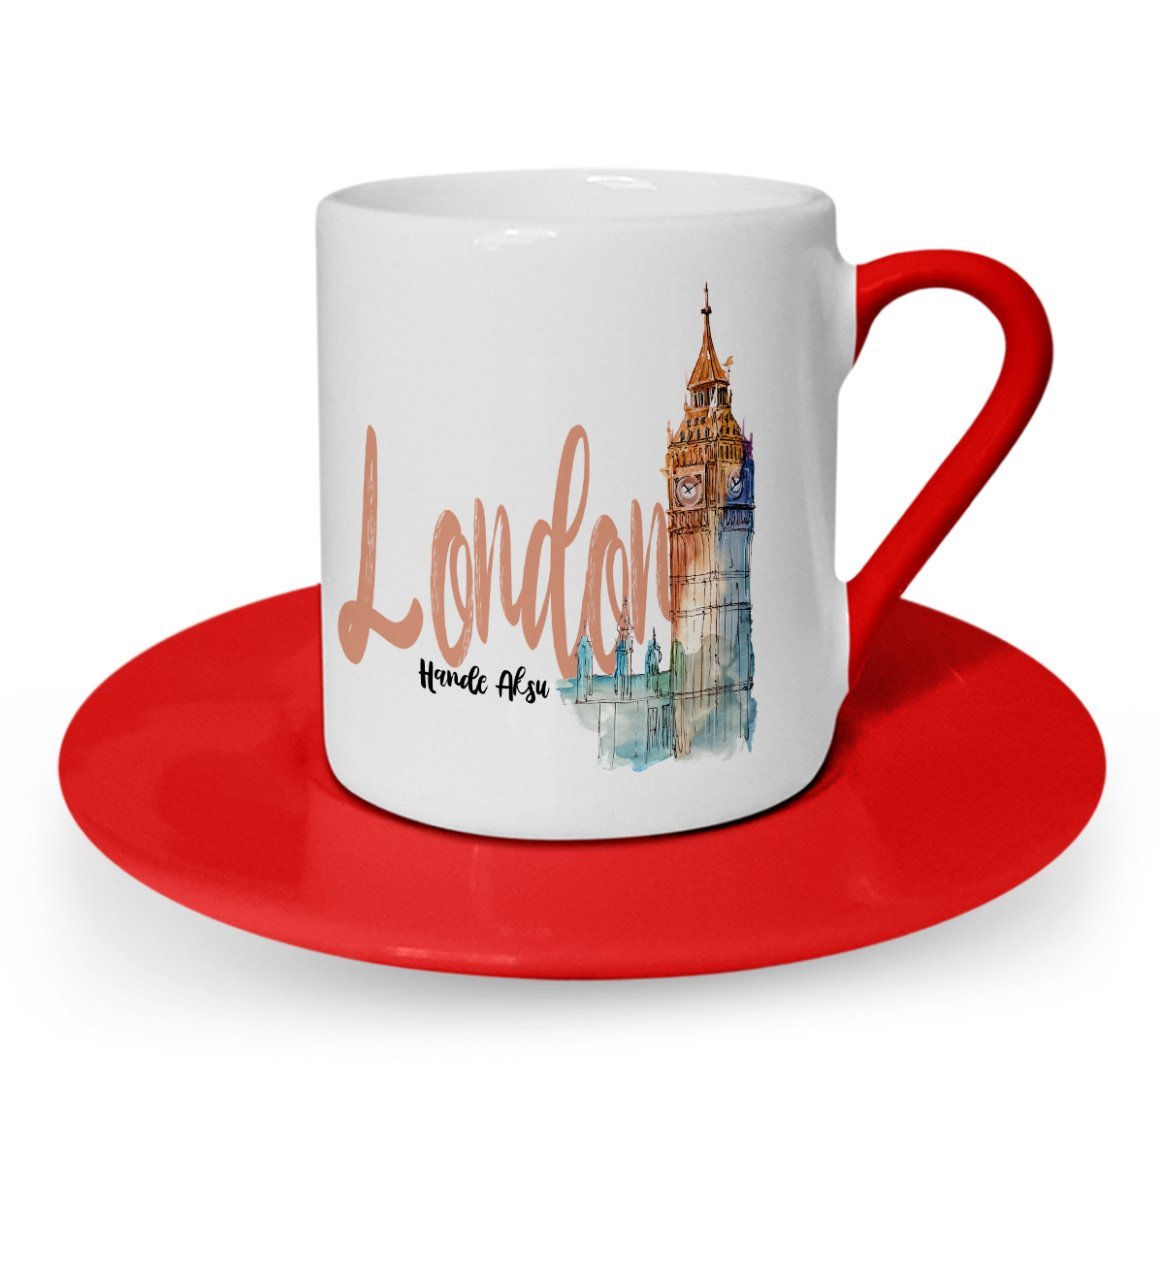 Kişiye Özel London Tasarımlı Kırmızı Türk Kahvesi Fincanı - 2